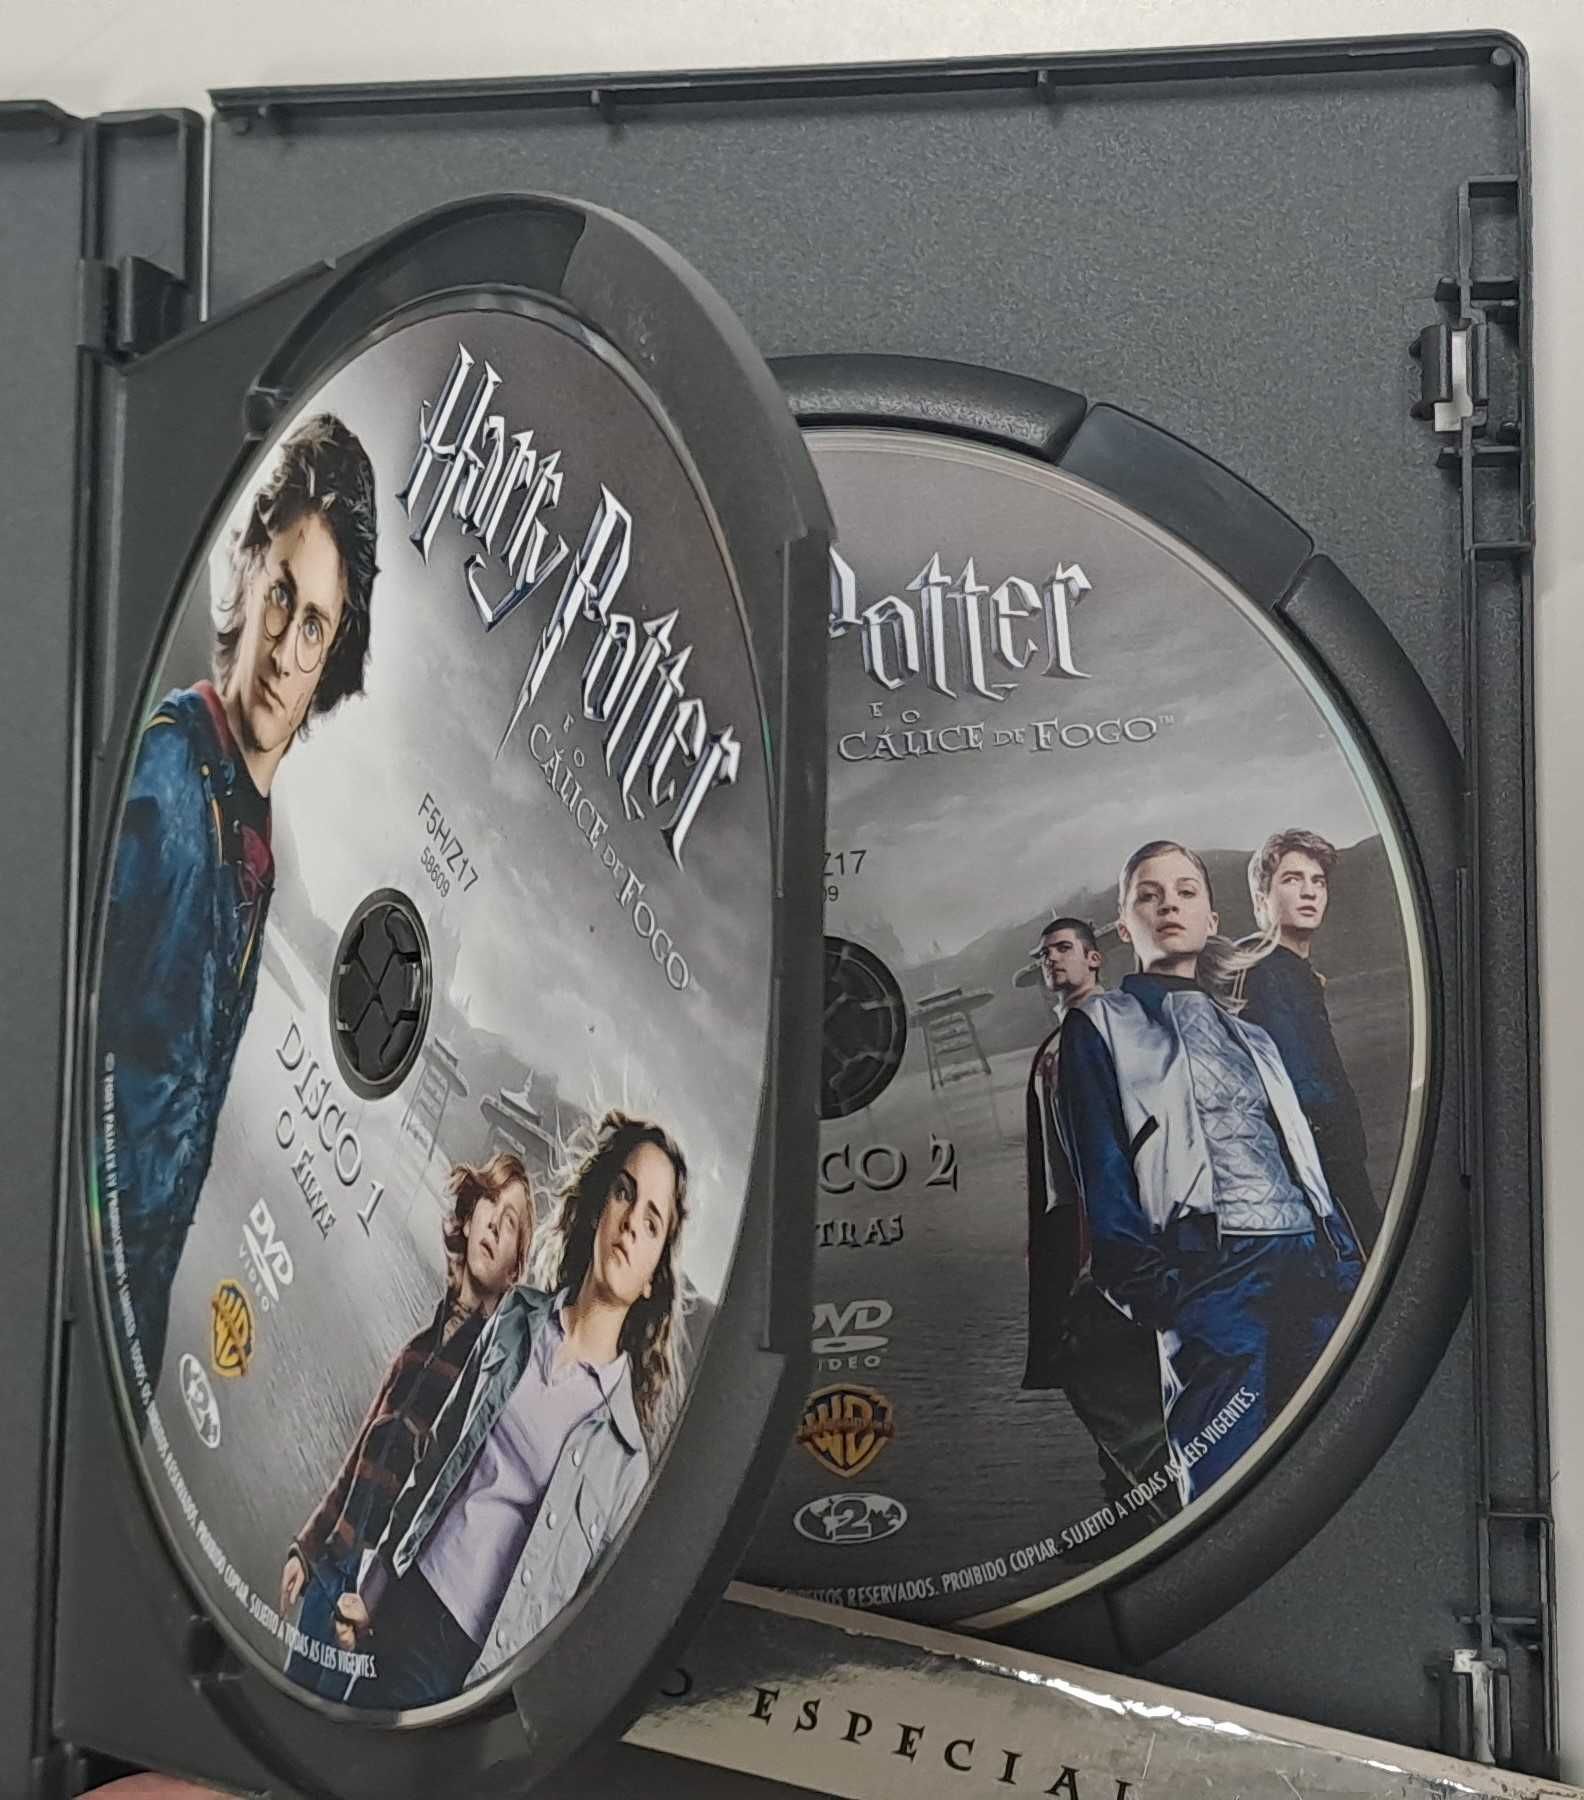 3 Filmes do Harry Potter (5 DVD contando com 2 extras)